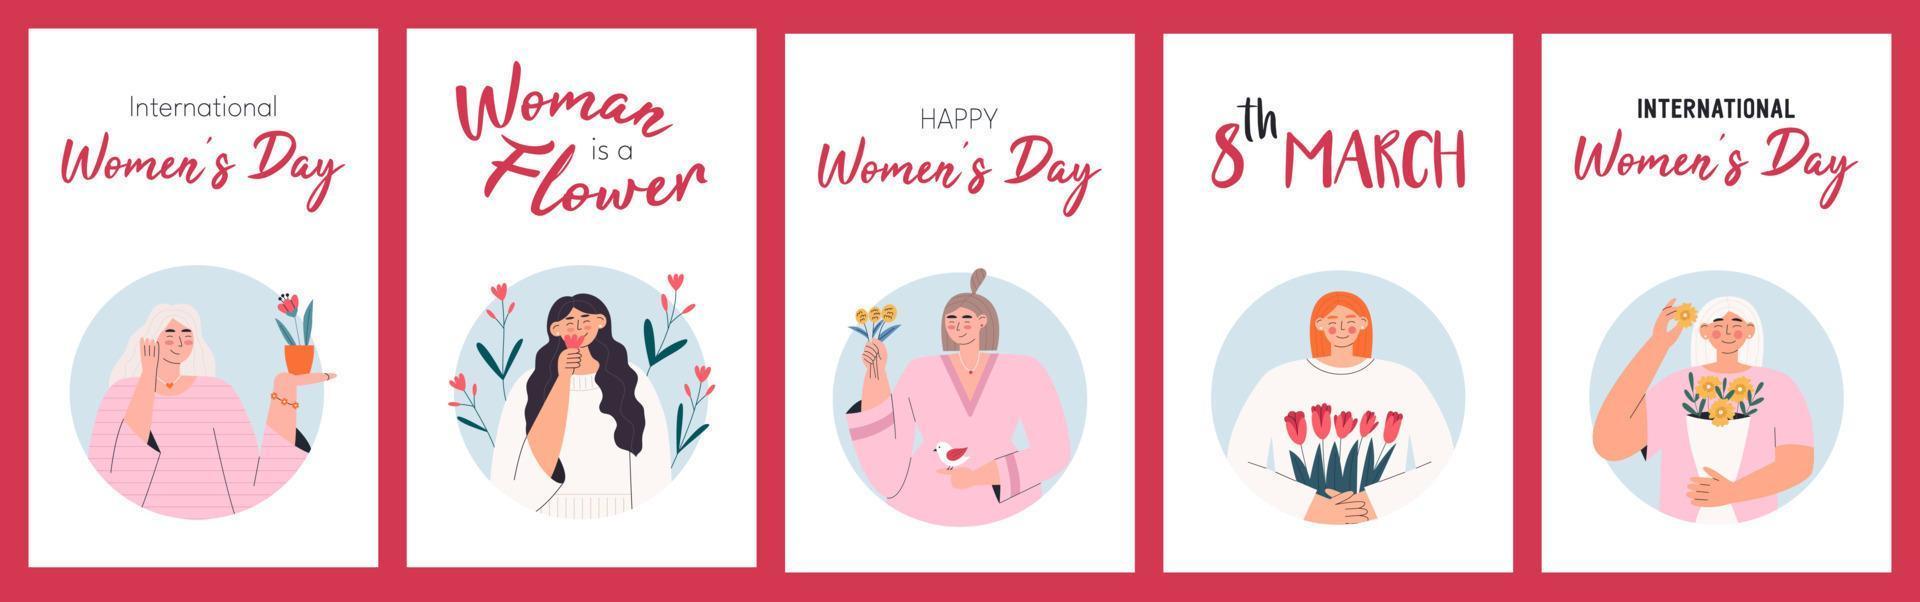 cartões para o dia internacional da mulher vetor